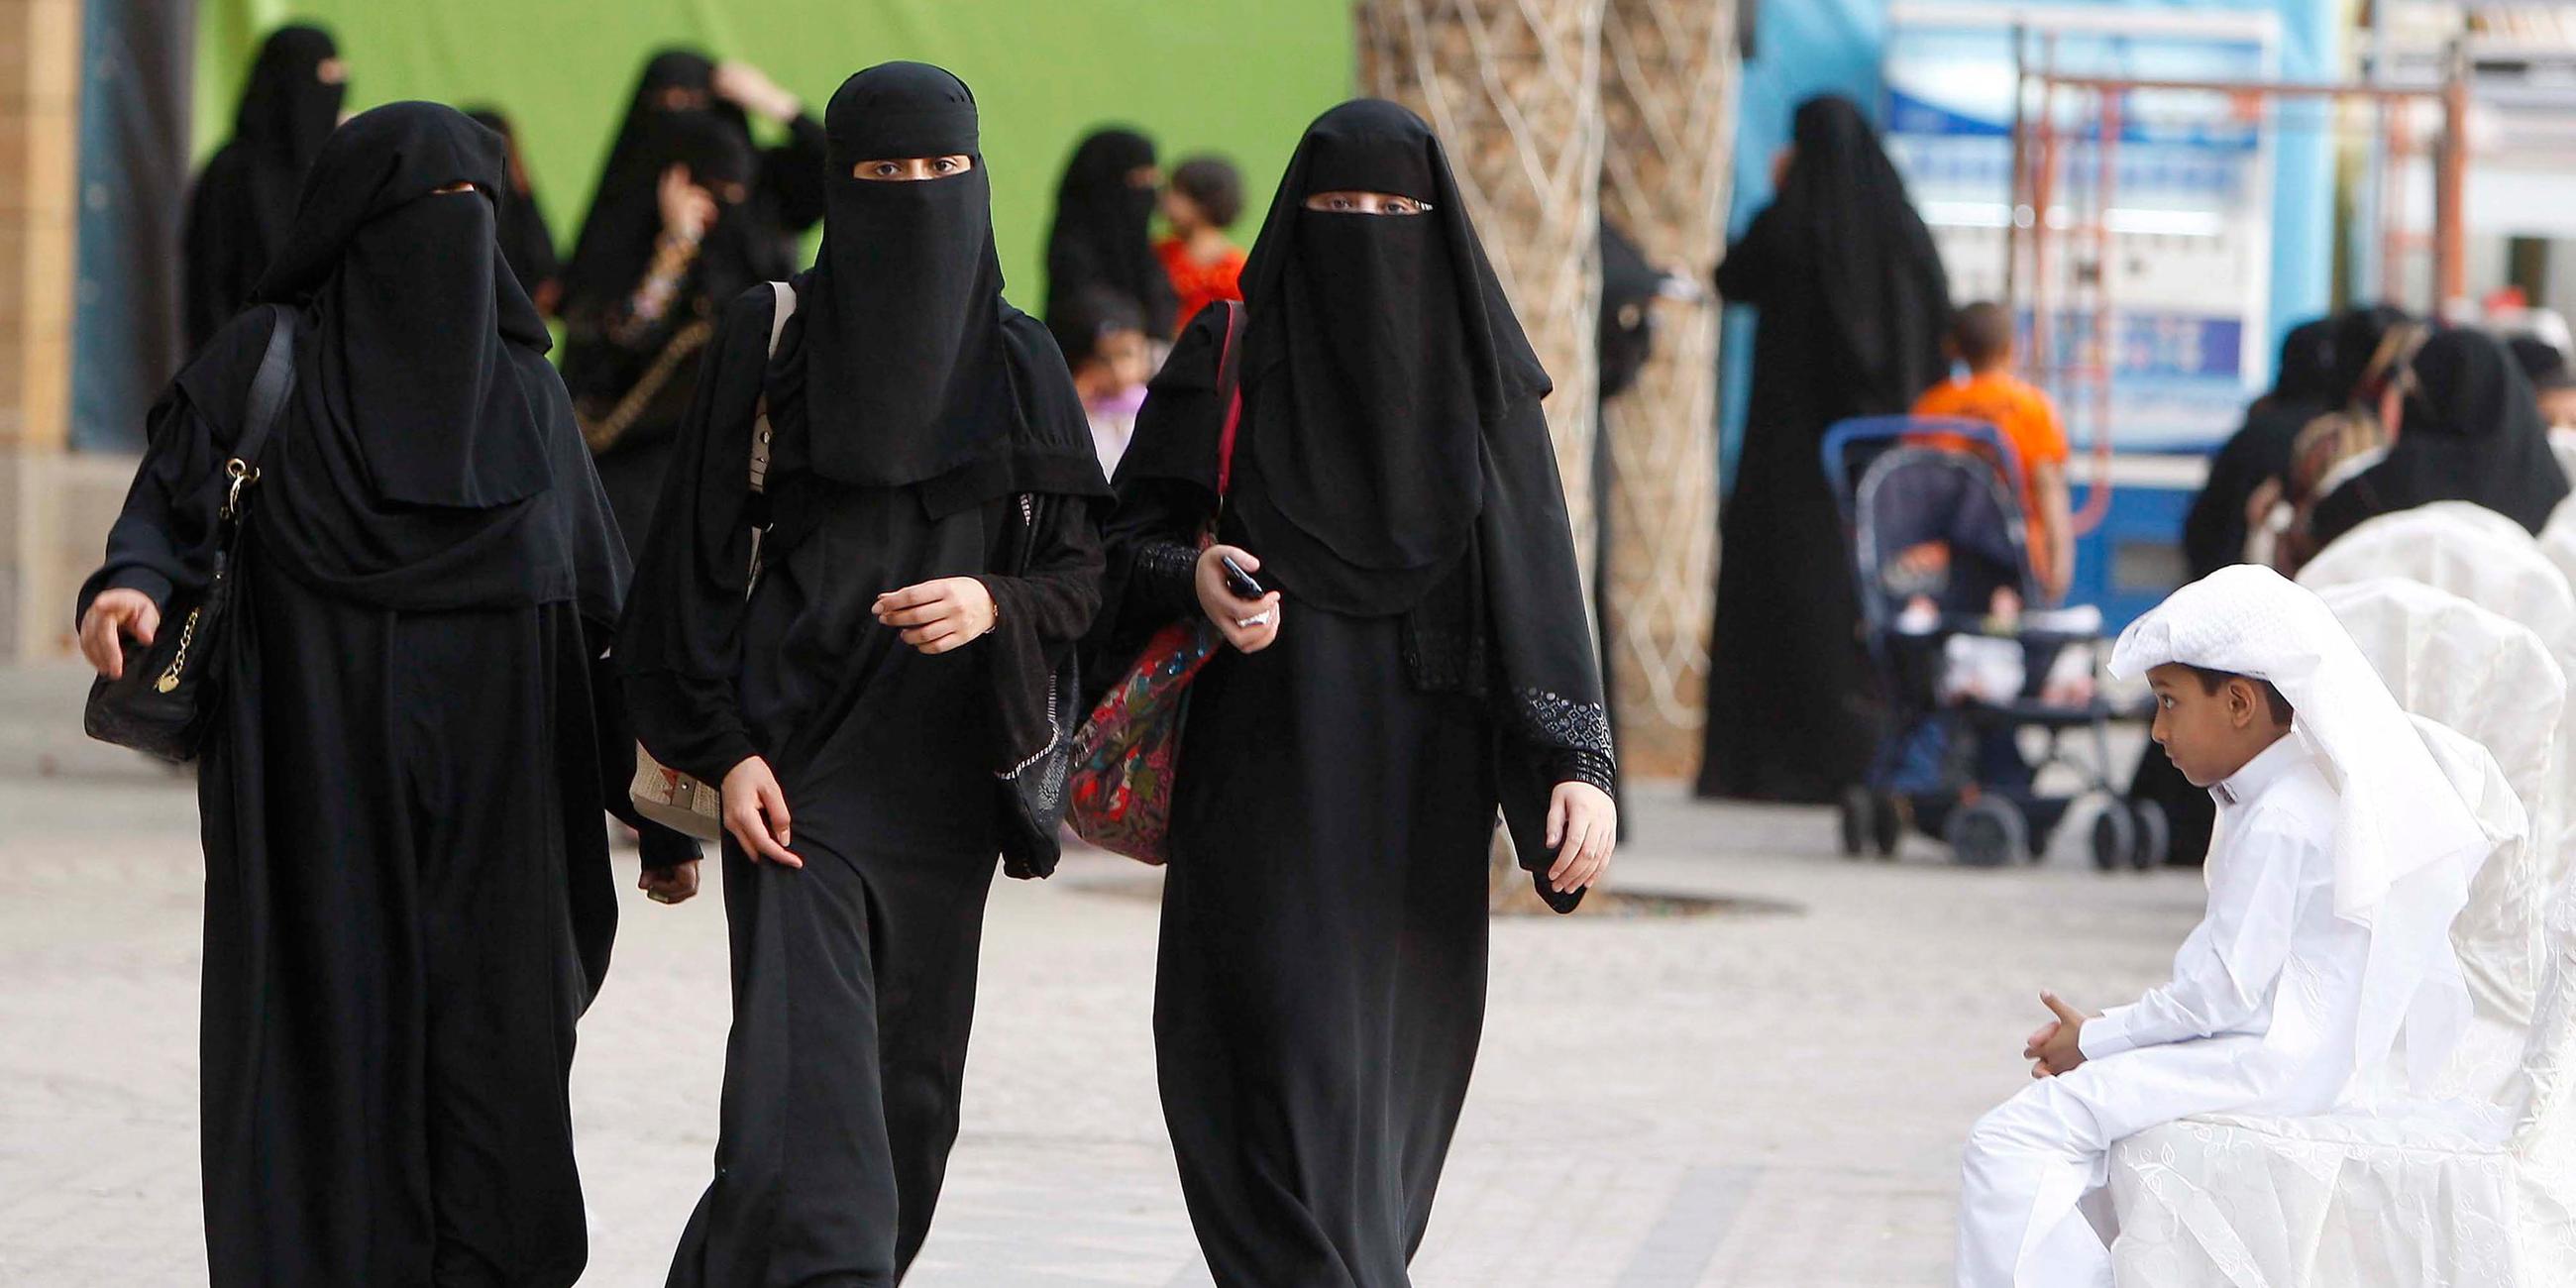 Archiv: Vollverschleierte Frauen in Saudi-Arabien